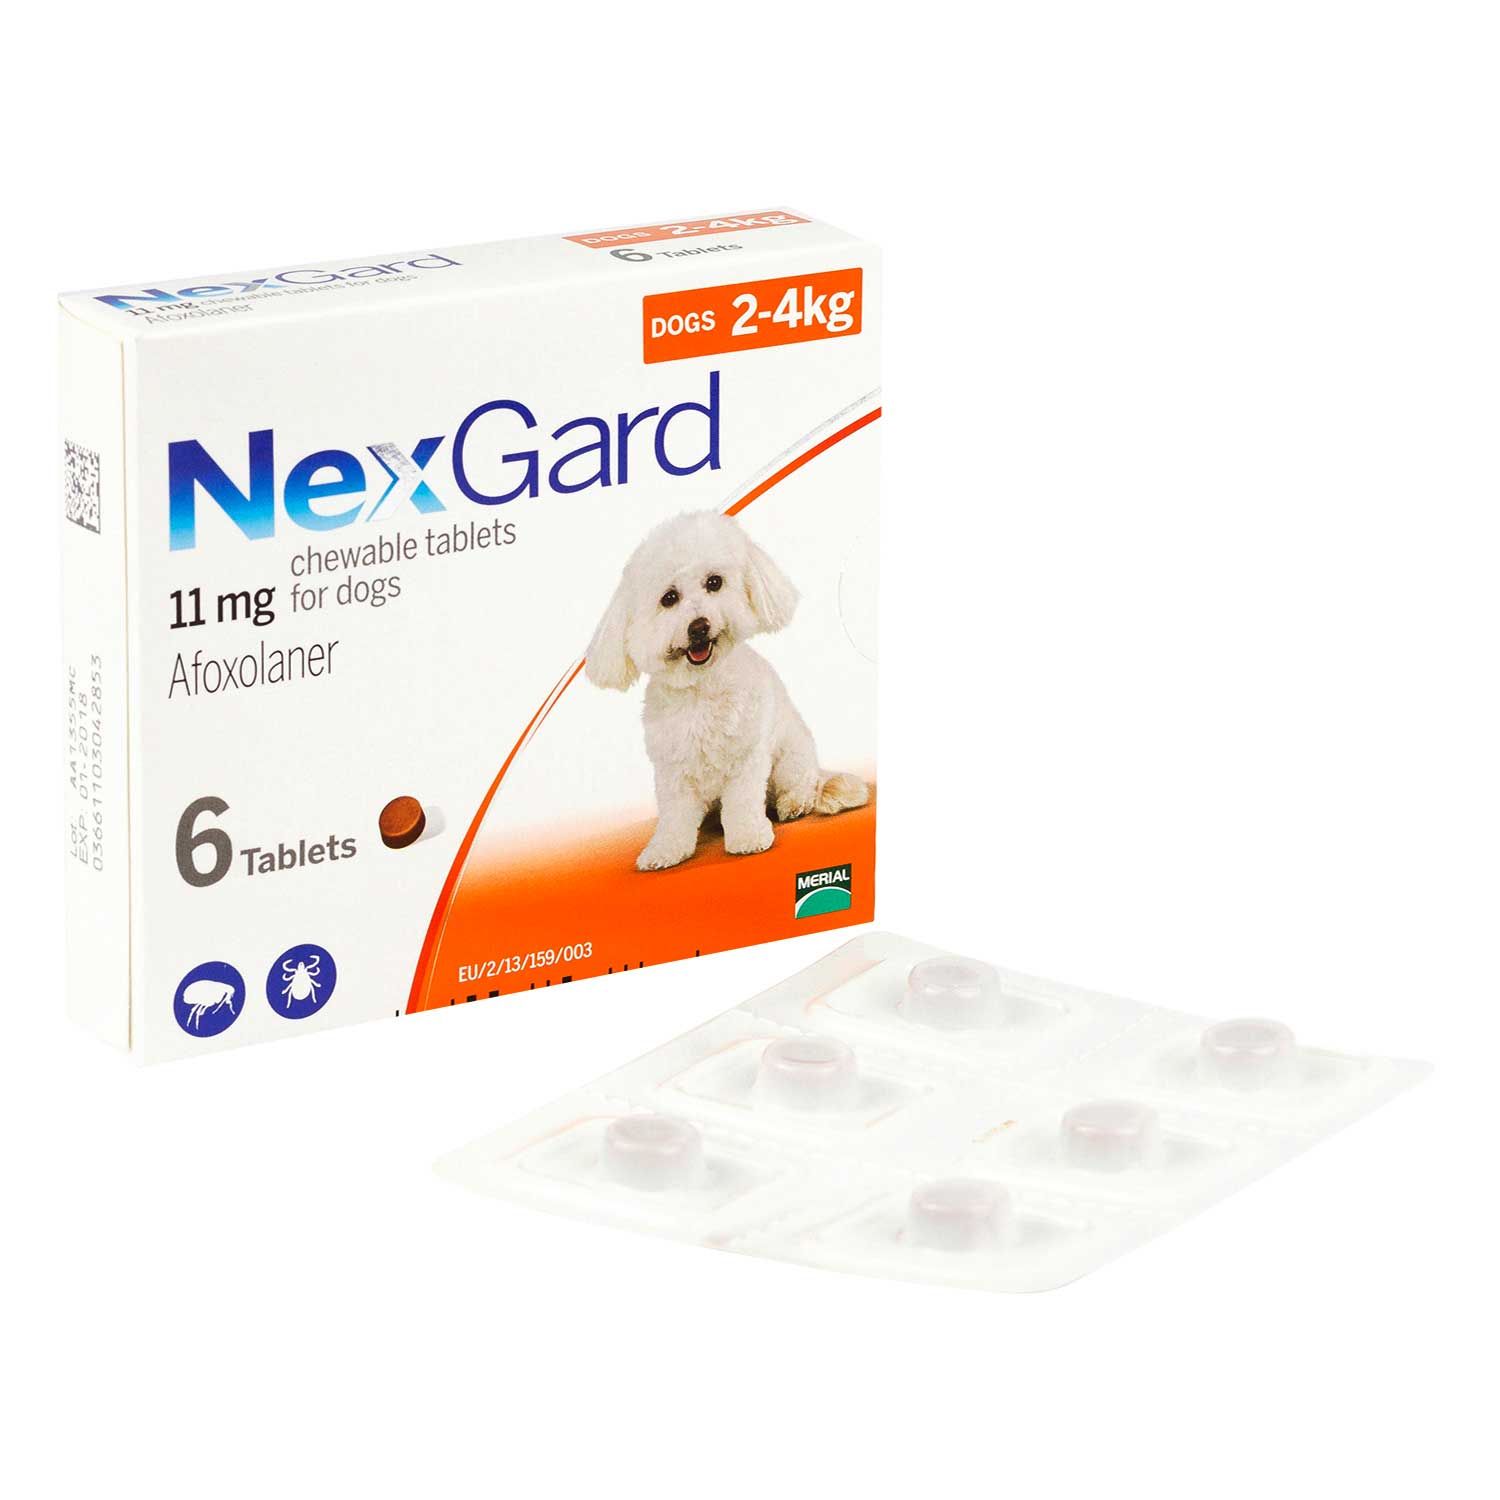 ネクスガード11mg 小型犬用 6チュアブル入り通販 効果 副作用 使用方法 口コミなら